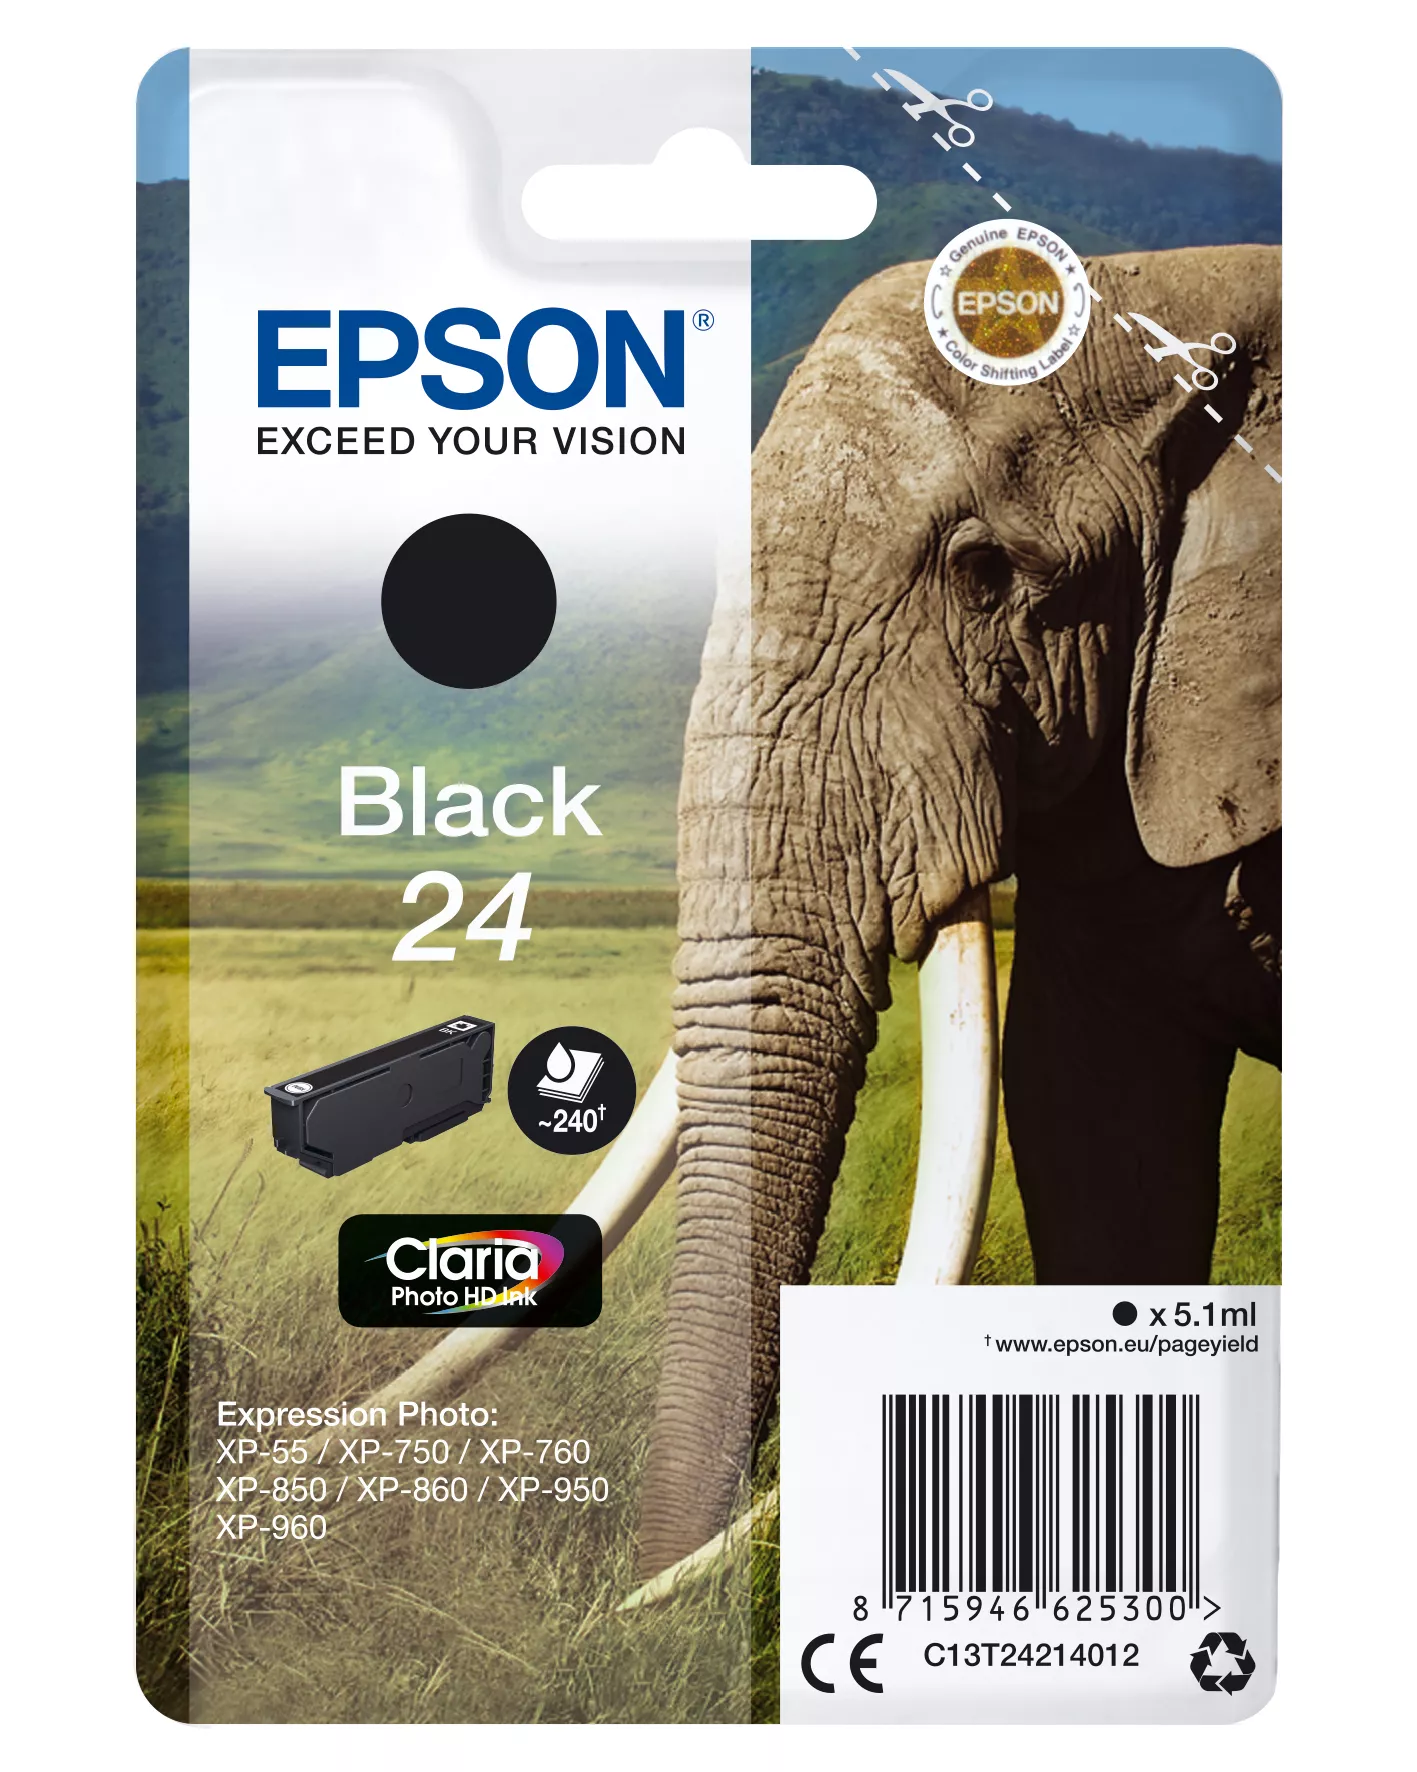 Achat EPSON 24 cartouche encre noir capacité standard 5.1ml 240 sur hello RSE